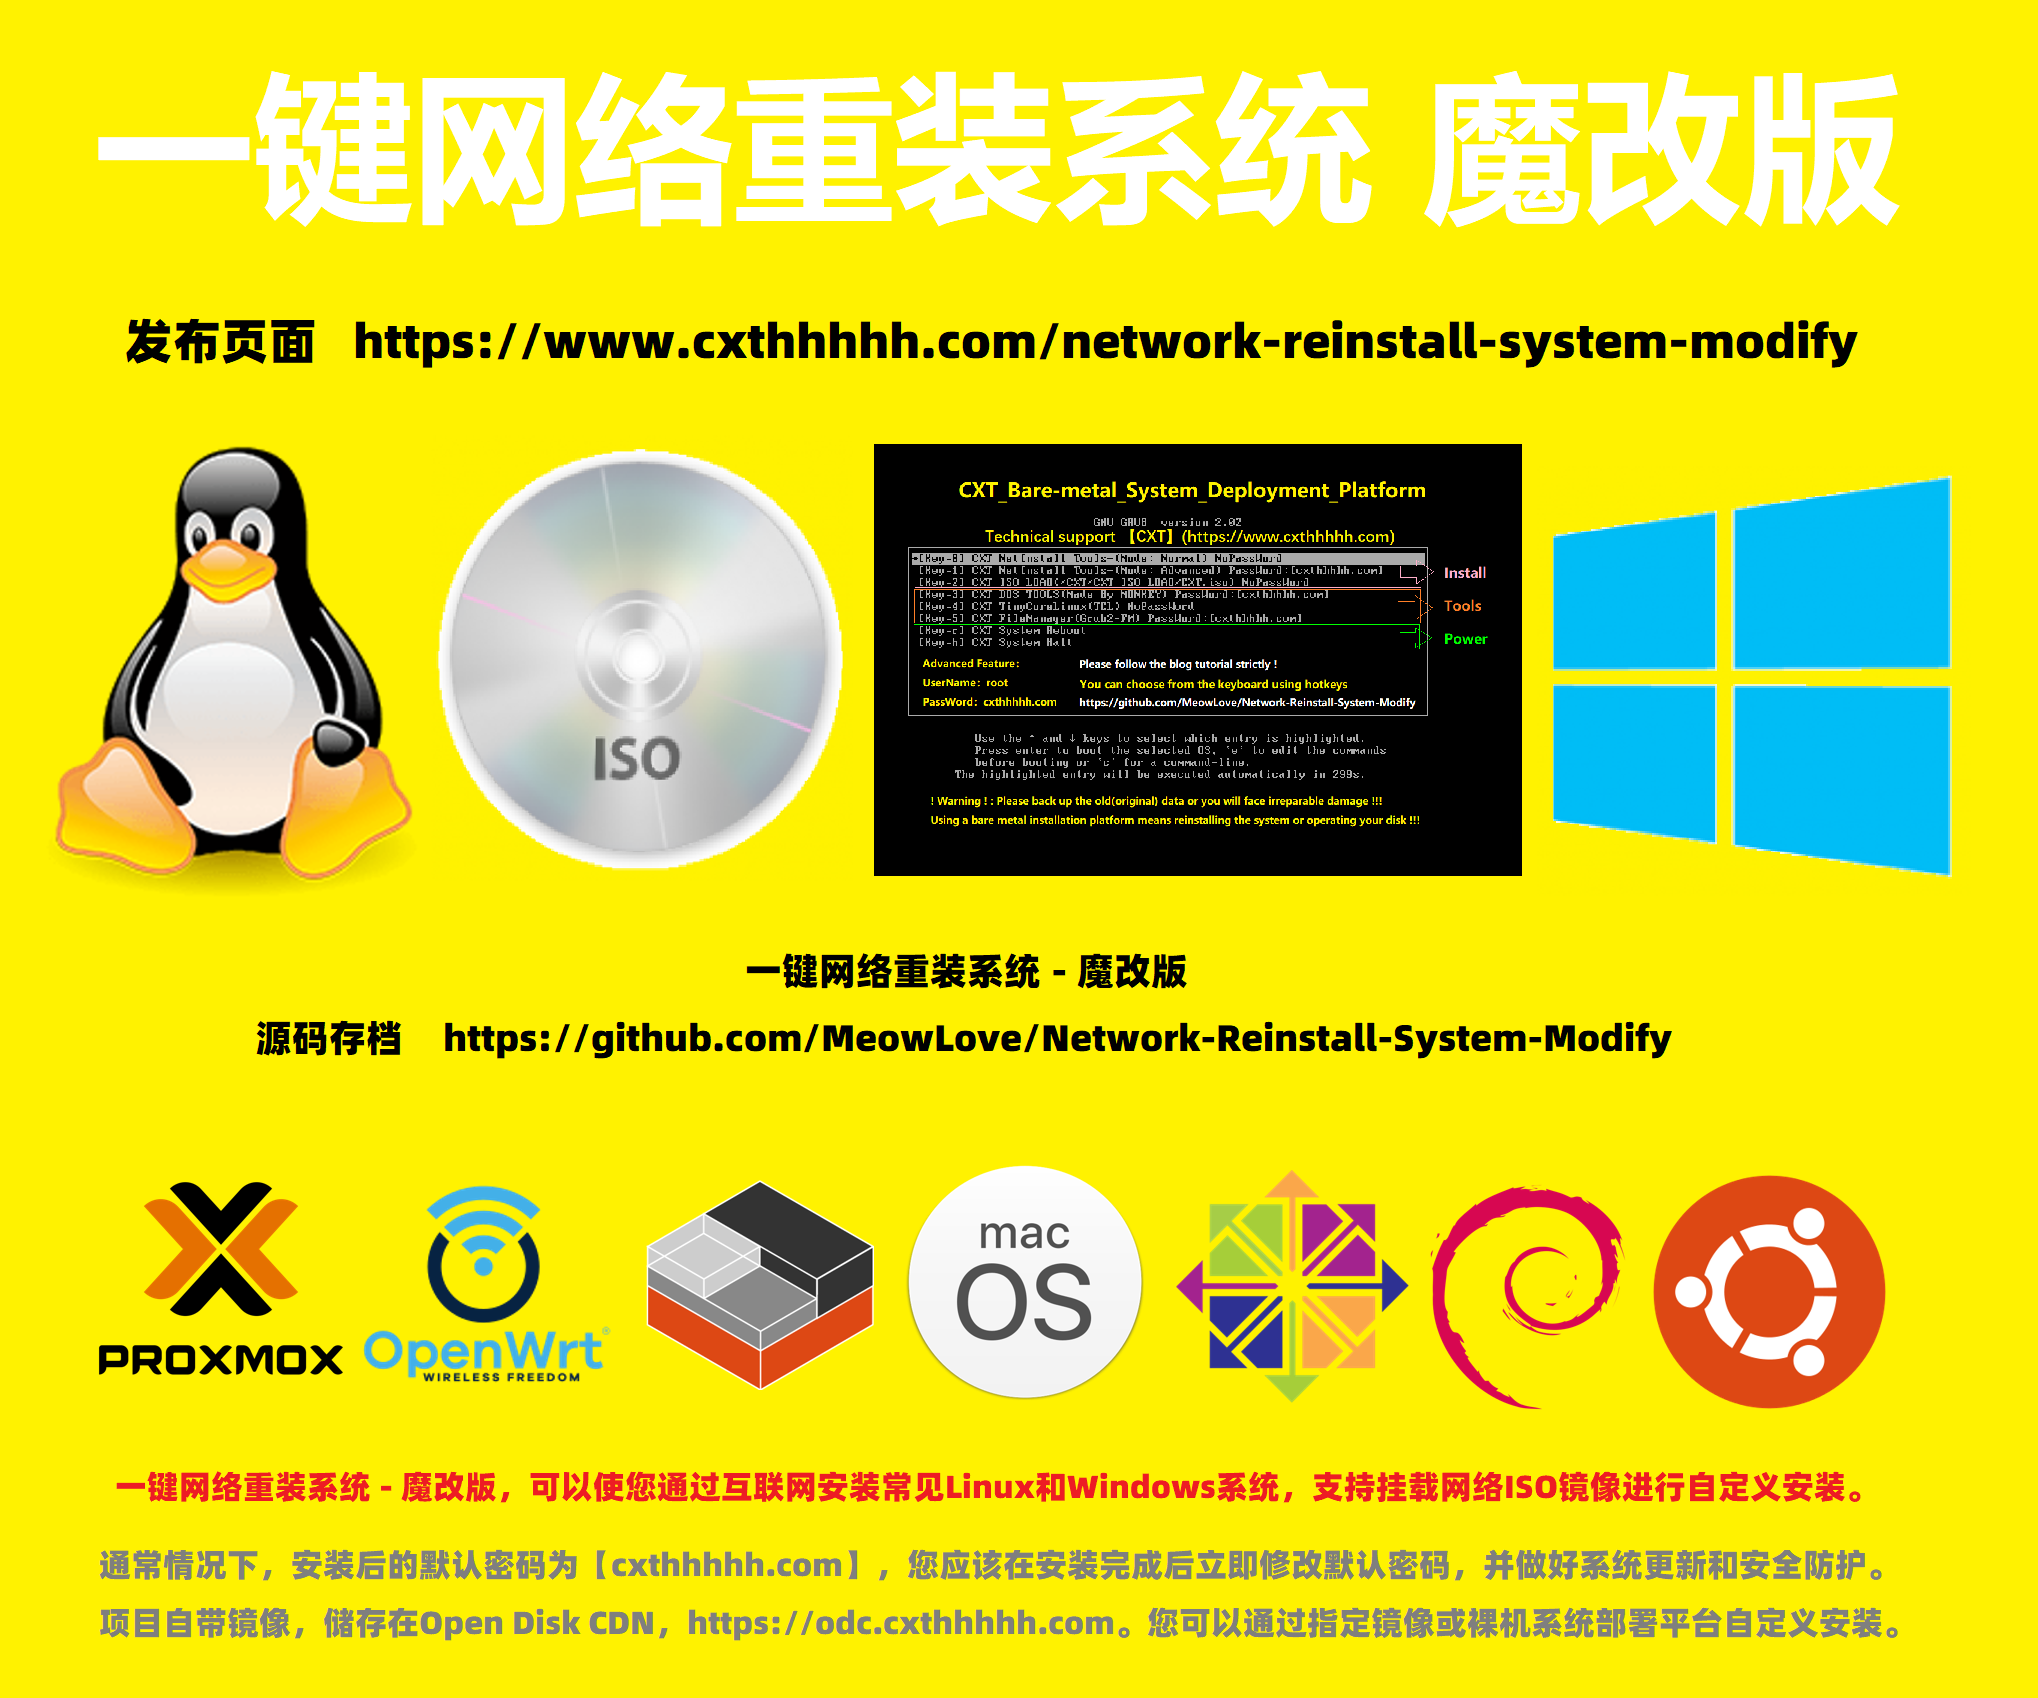 一键网络重装系统 – 魔改版（适用于Linux / Windows）